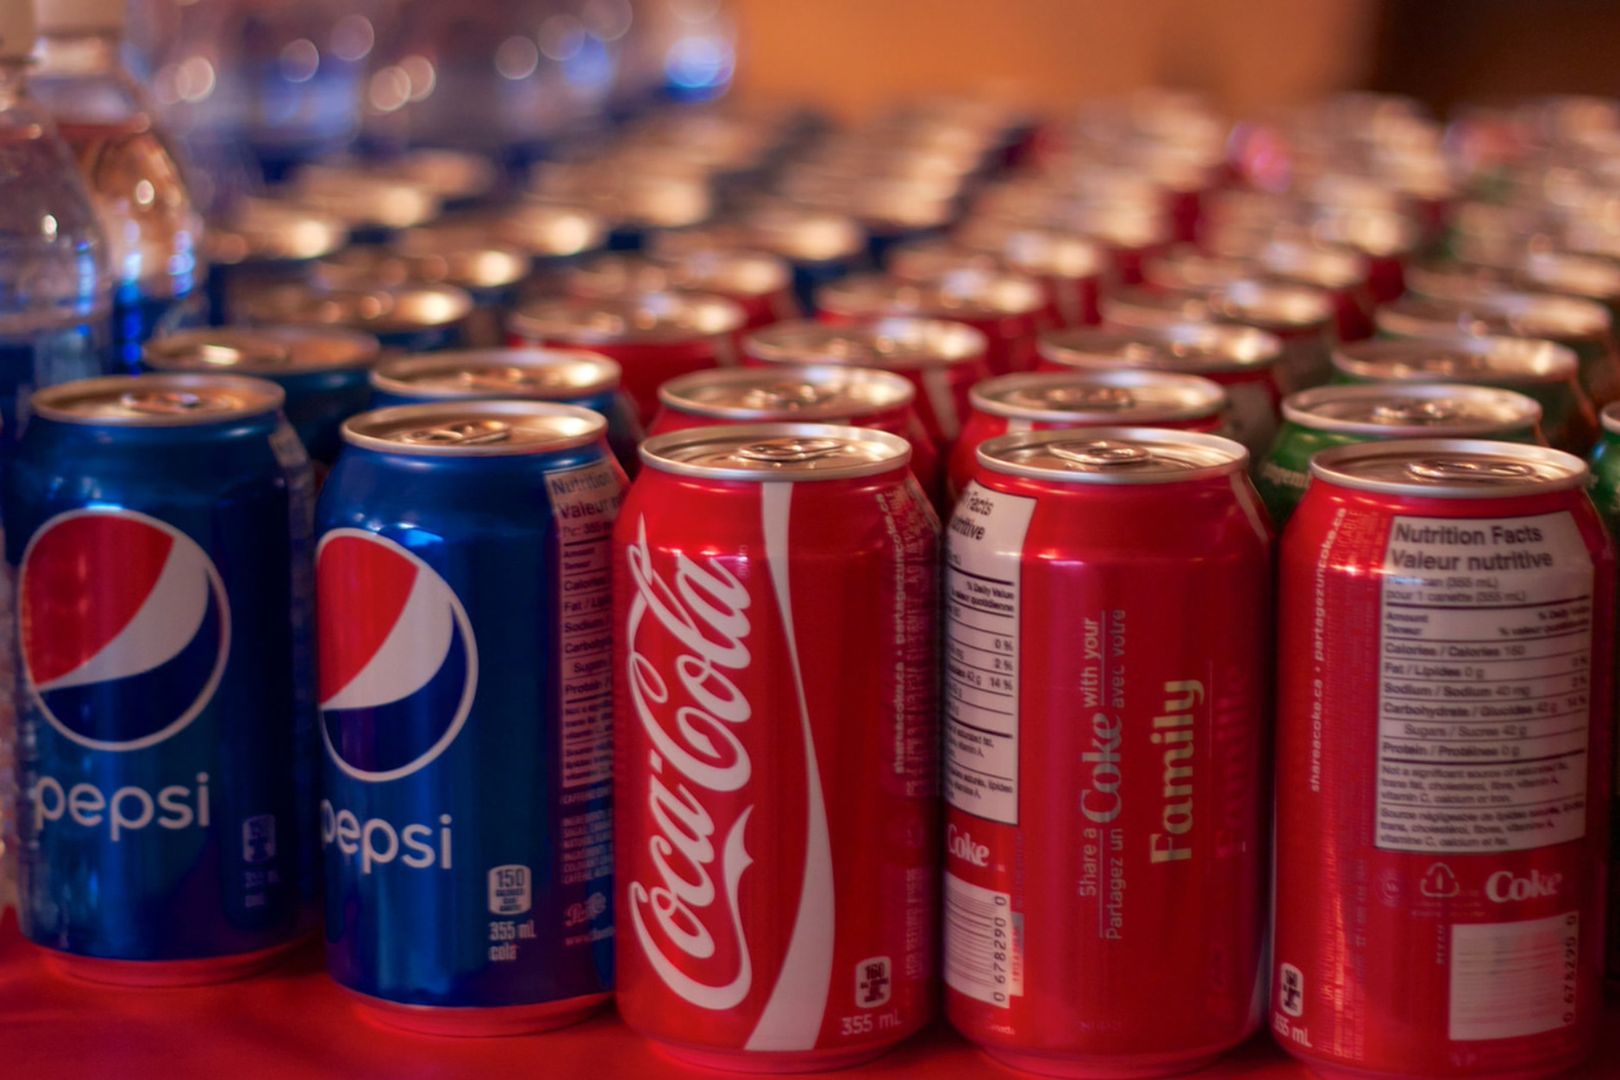 Przez tę różnicę Pepsi wygrywa z Coca-Colą w testach smaku